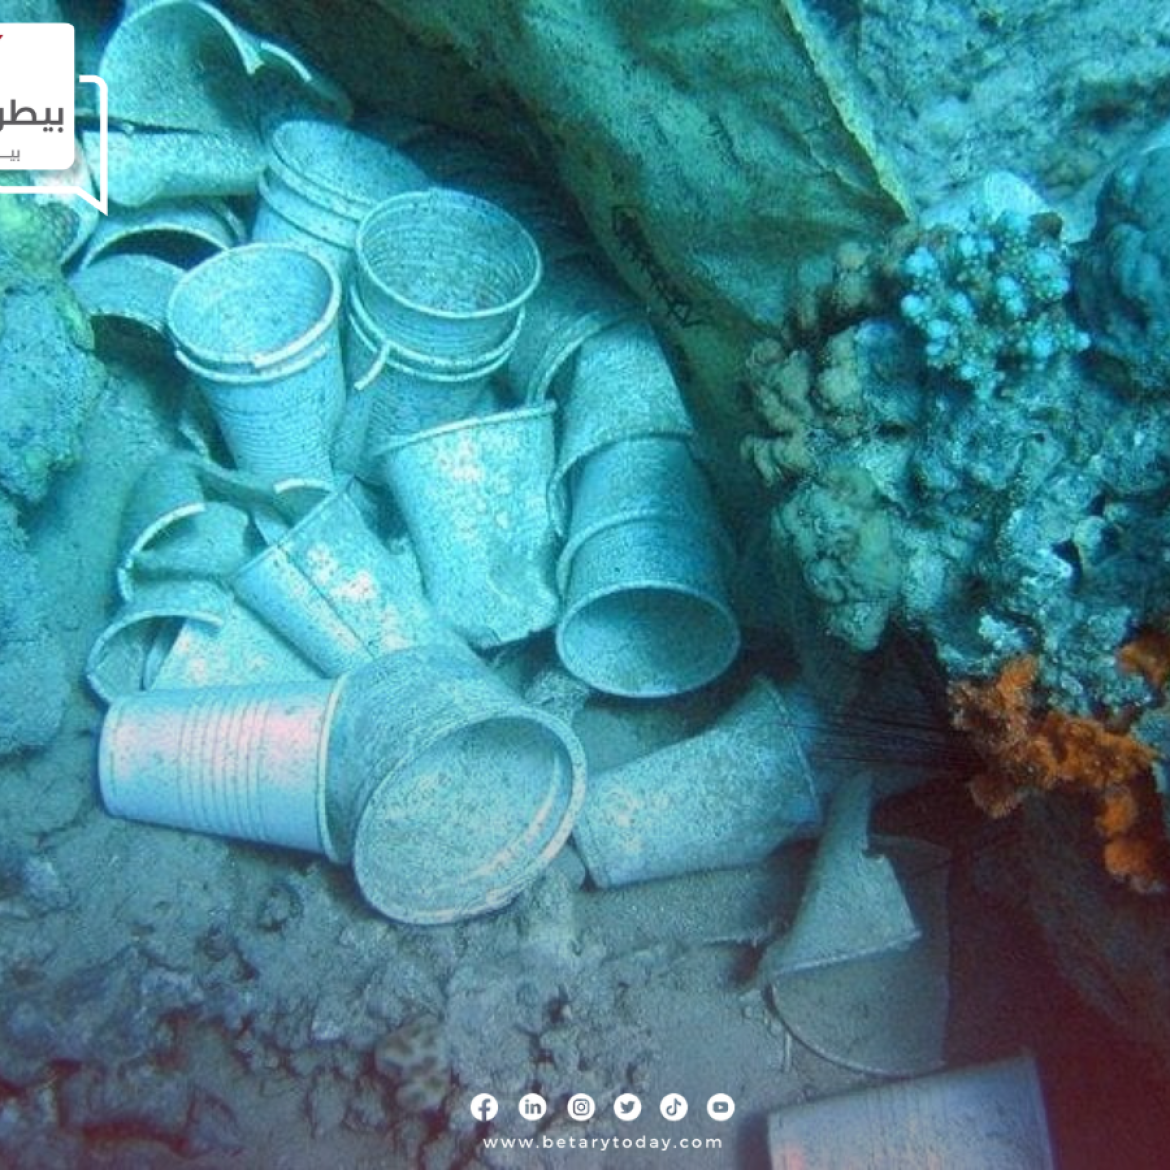 البلاستيك يهدد حياة الثروة السمكية في البحر المتوسط